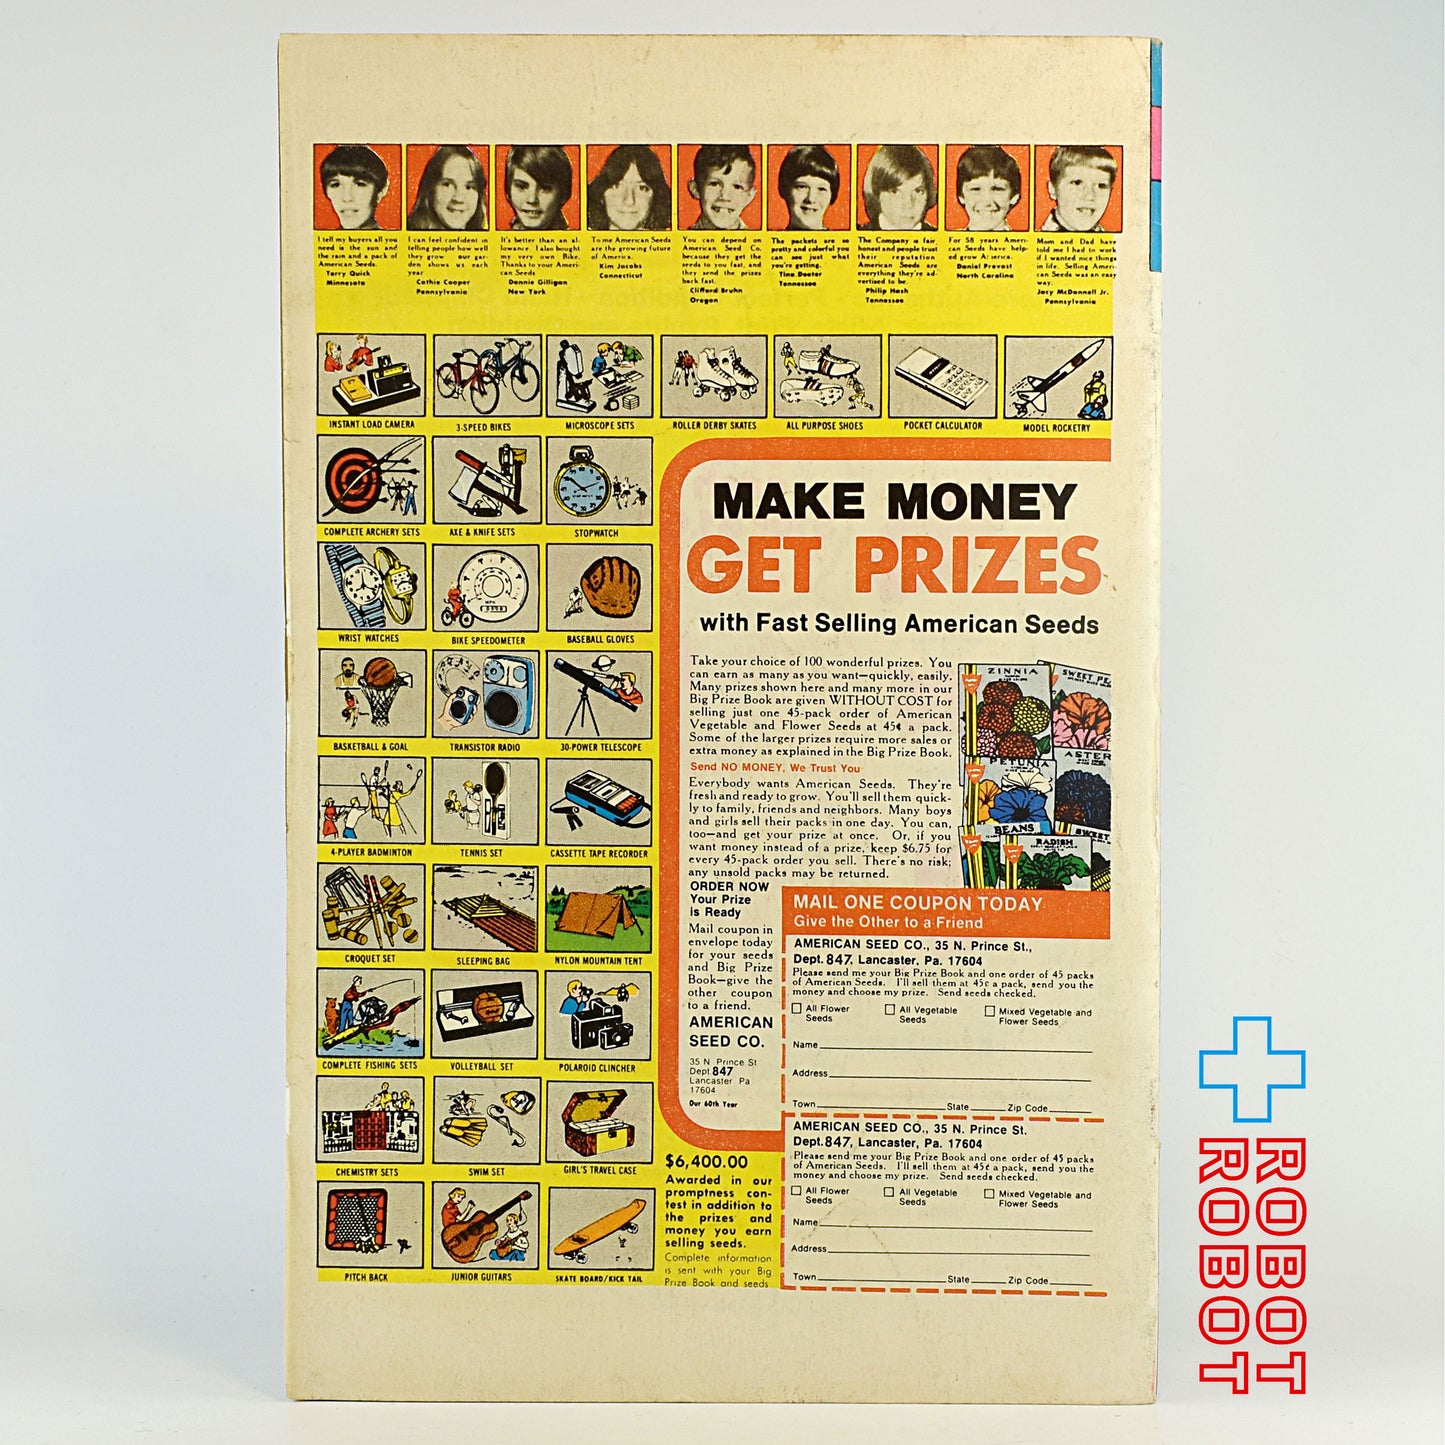 ゴールドキー・コミック トムとジェリー コミックス 305巻 1978年4月 90058-804